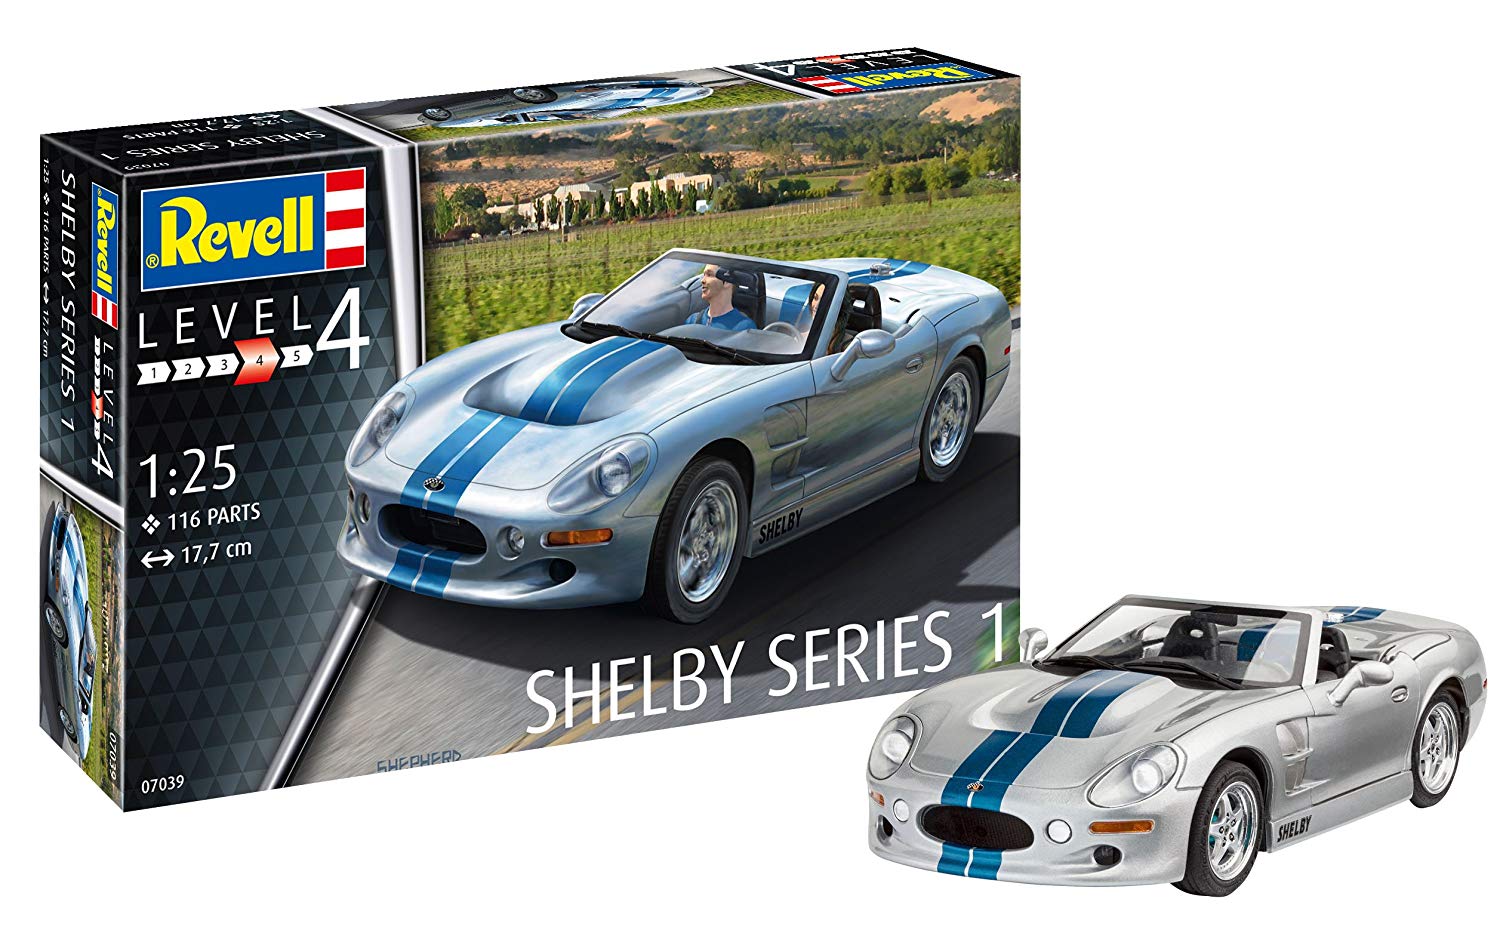 Revell Model Kit Scale Shelby Series I Level